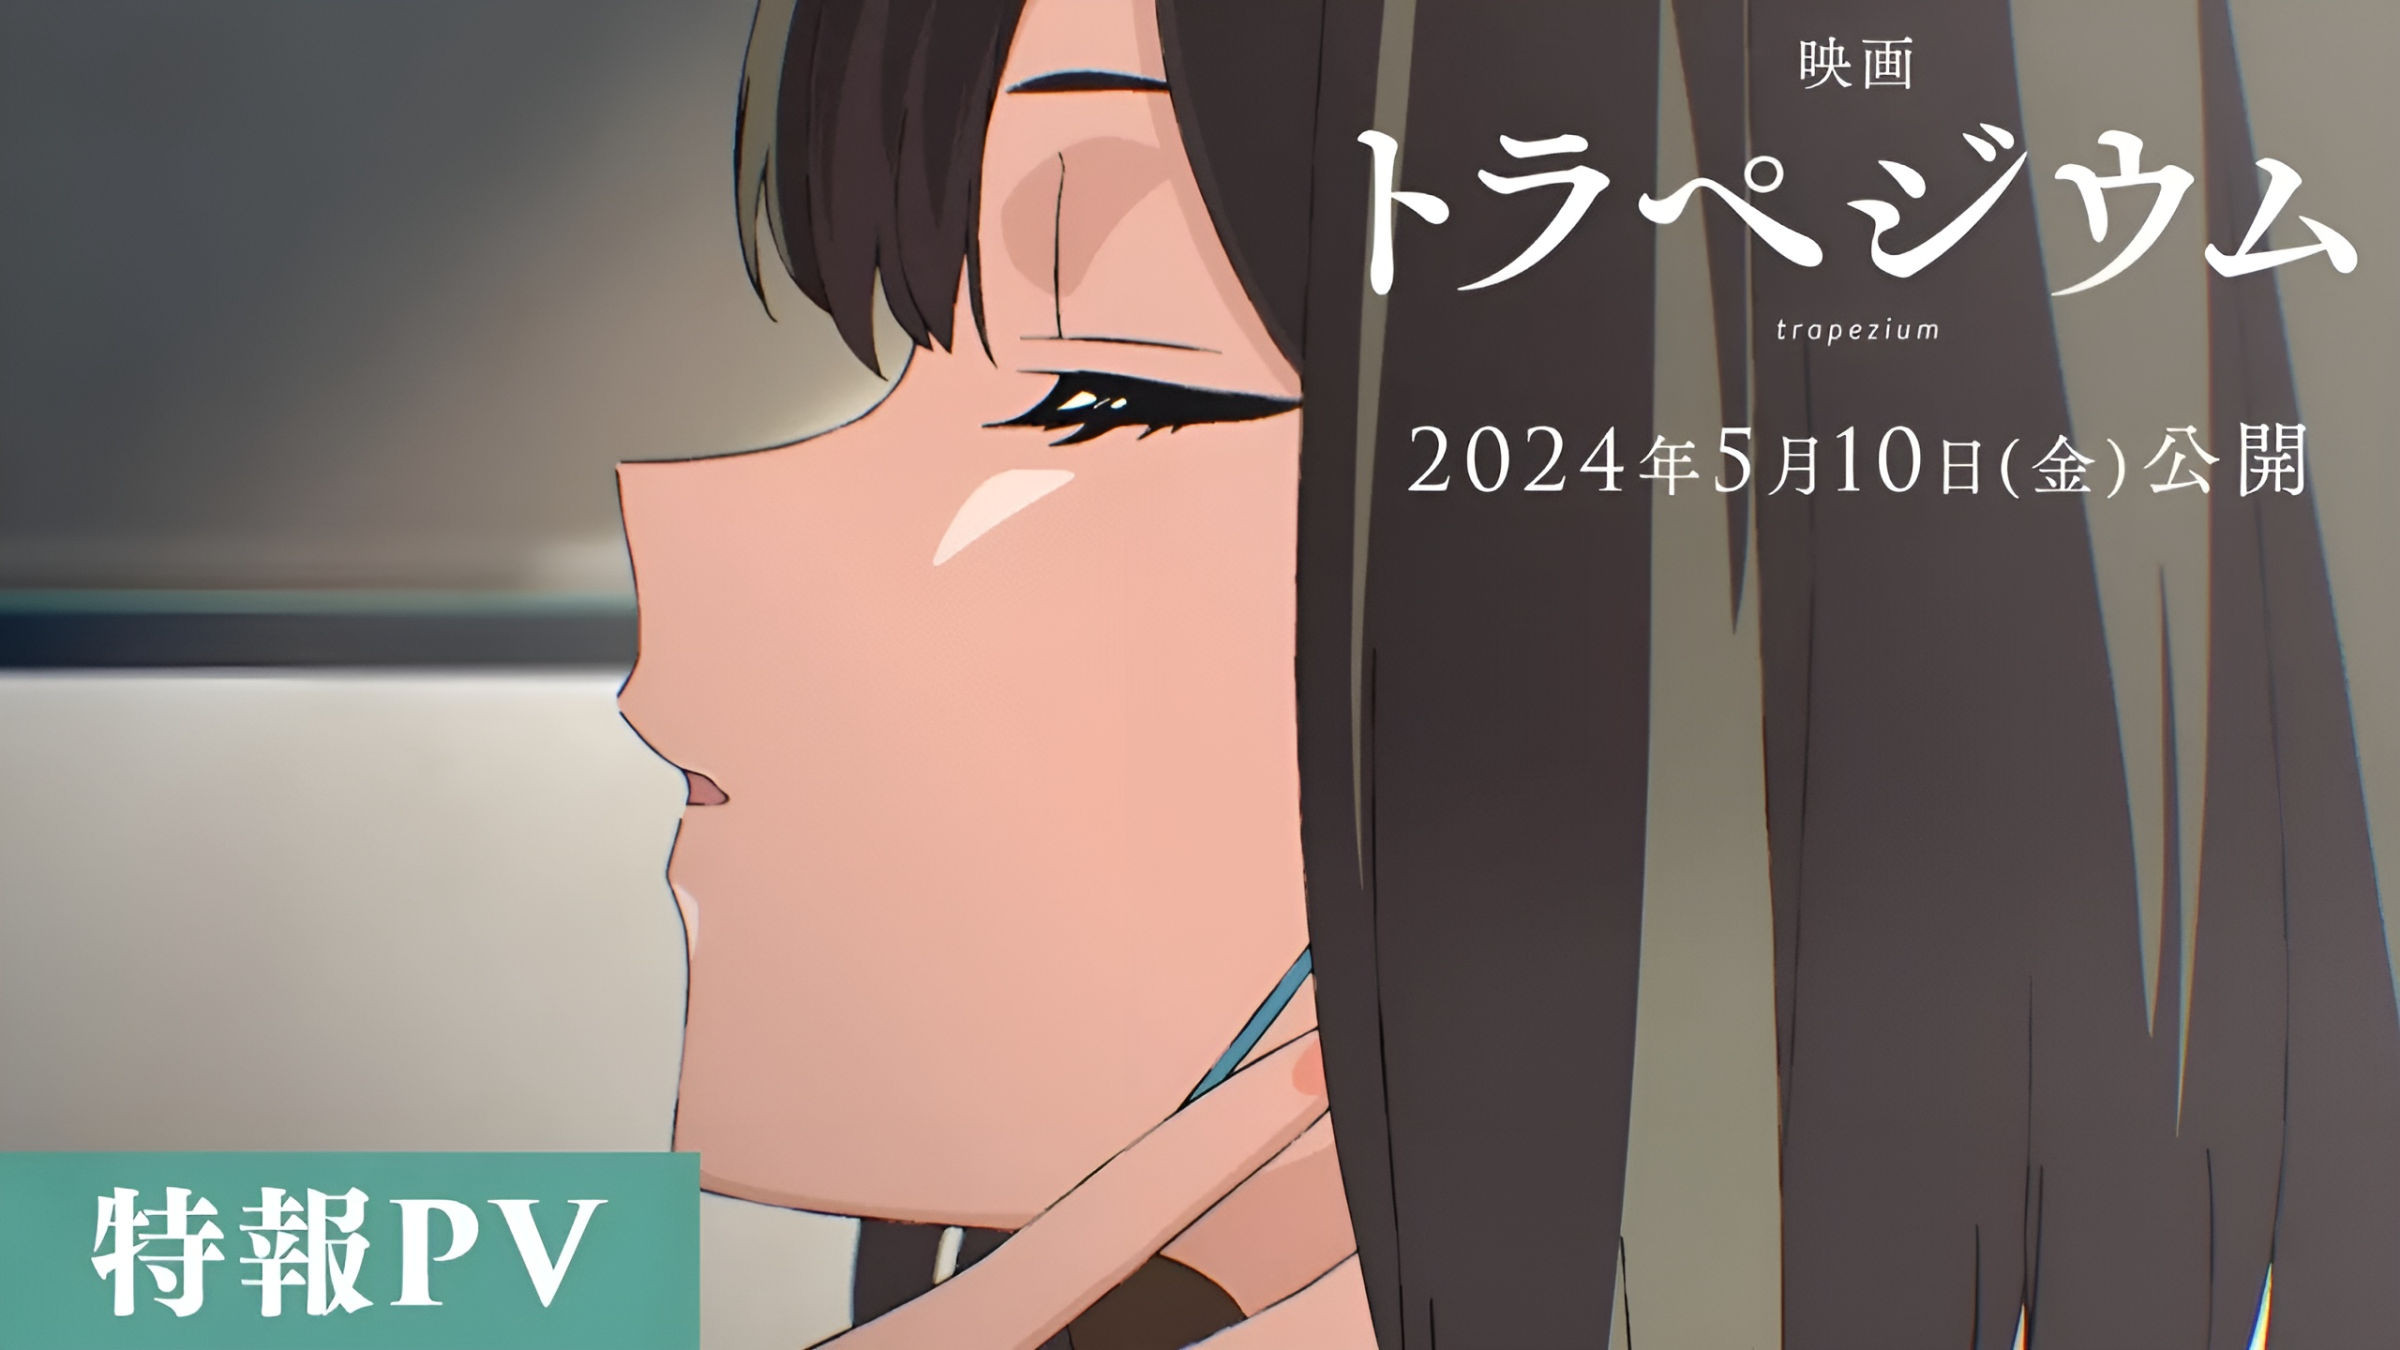 Kazumi Takayama’s Trapezium Novel Gets Anime Film Adaptation for May 2024